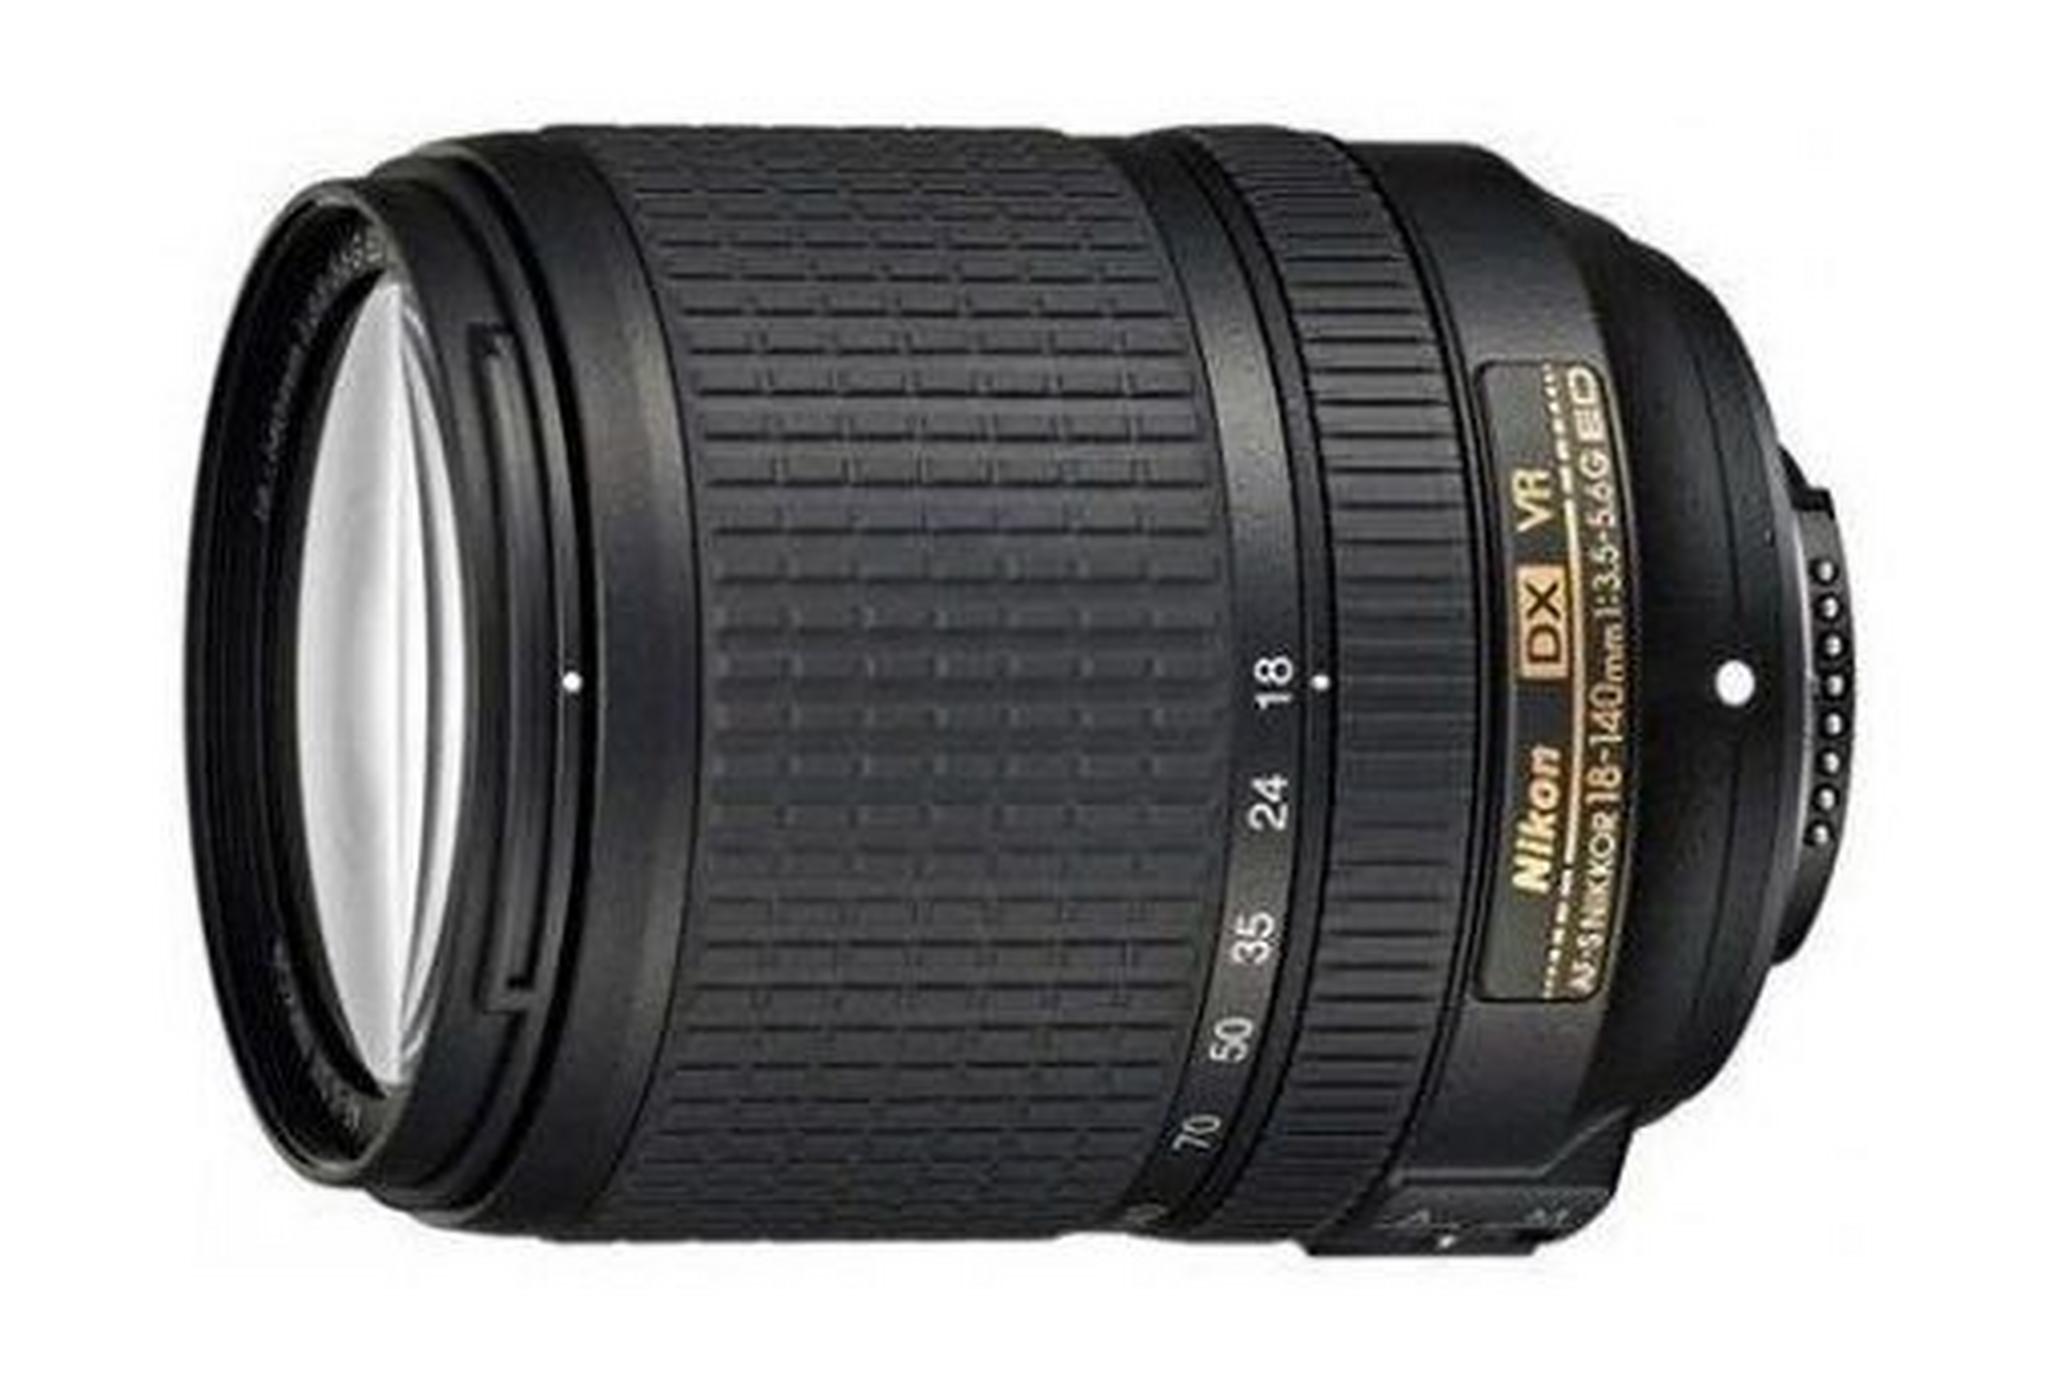 Nikon AF-S DX Nikkor 18-140mm f/3.5-5.6G ED VR Lens